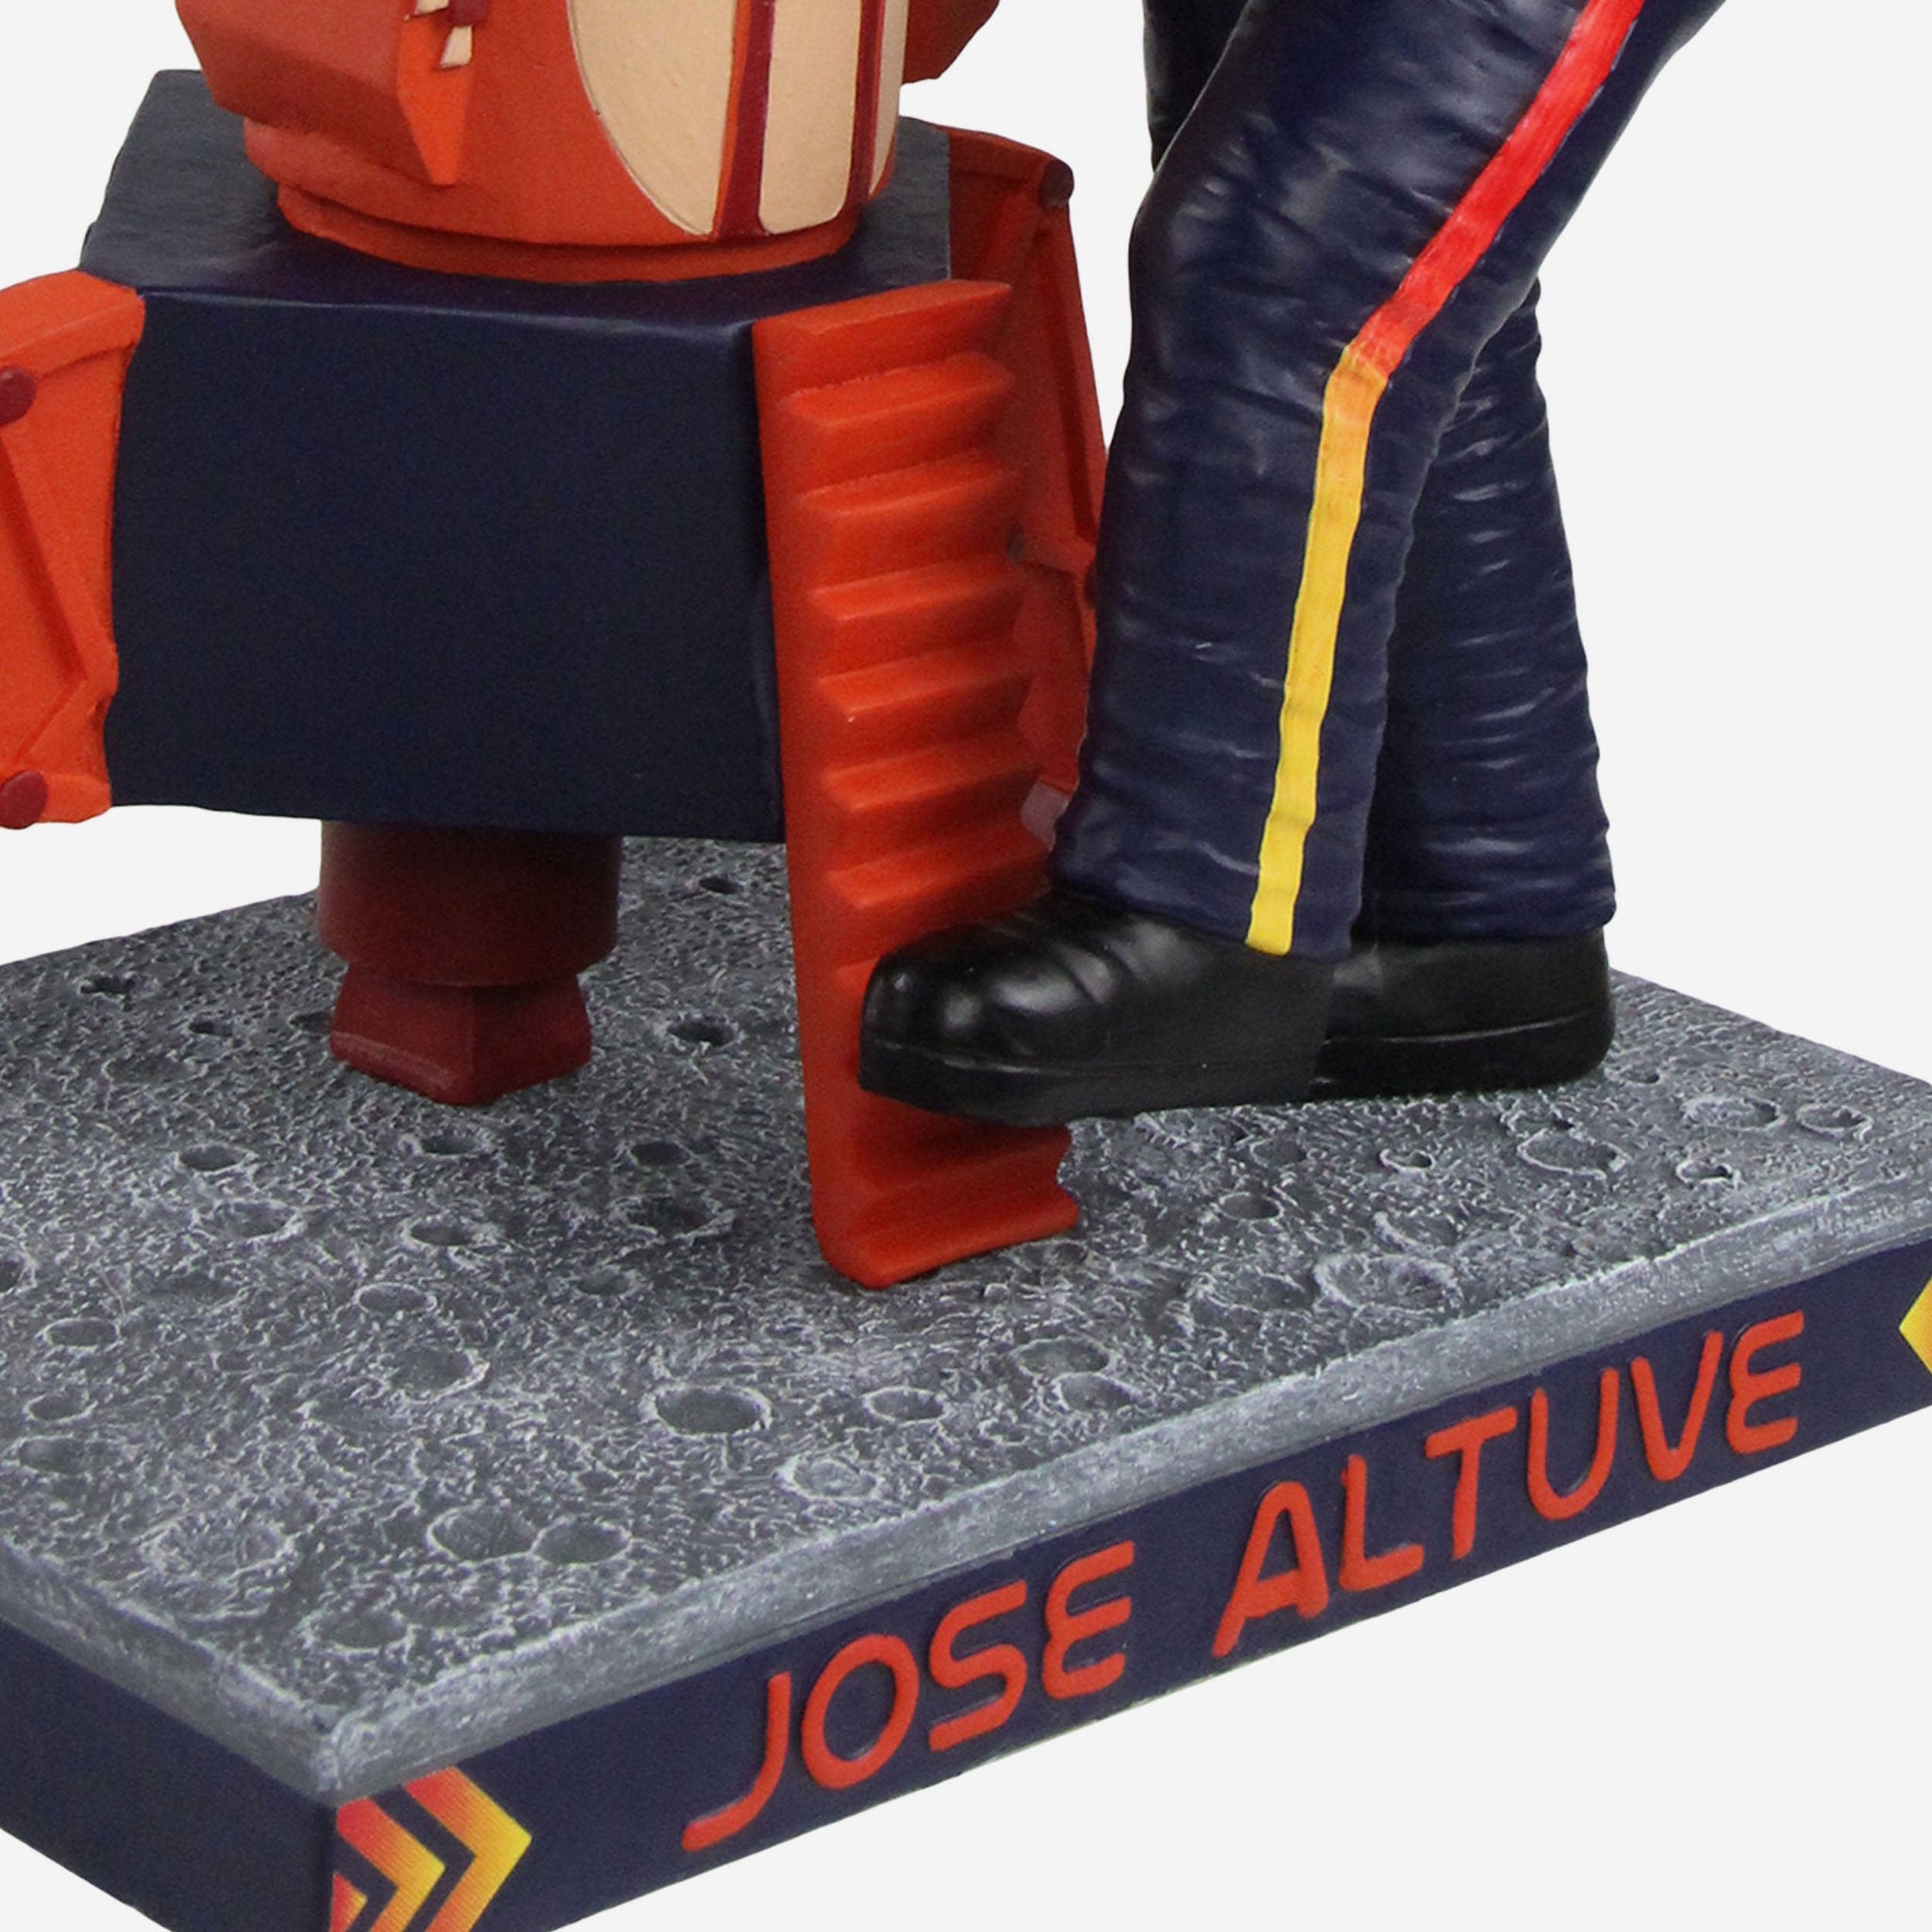 Jose Altuve Action Figures